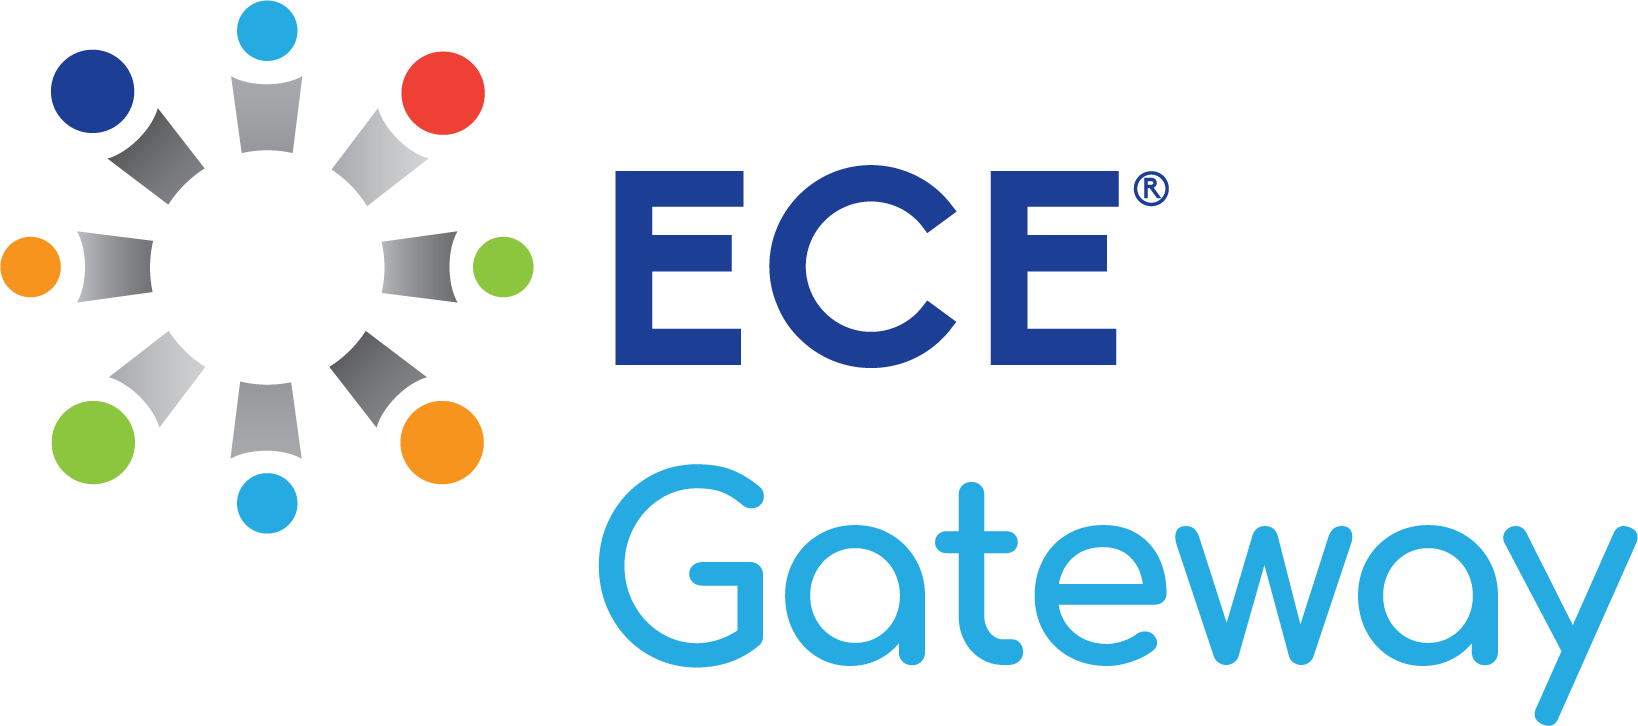 ECE Gateway Logo